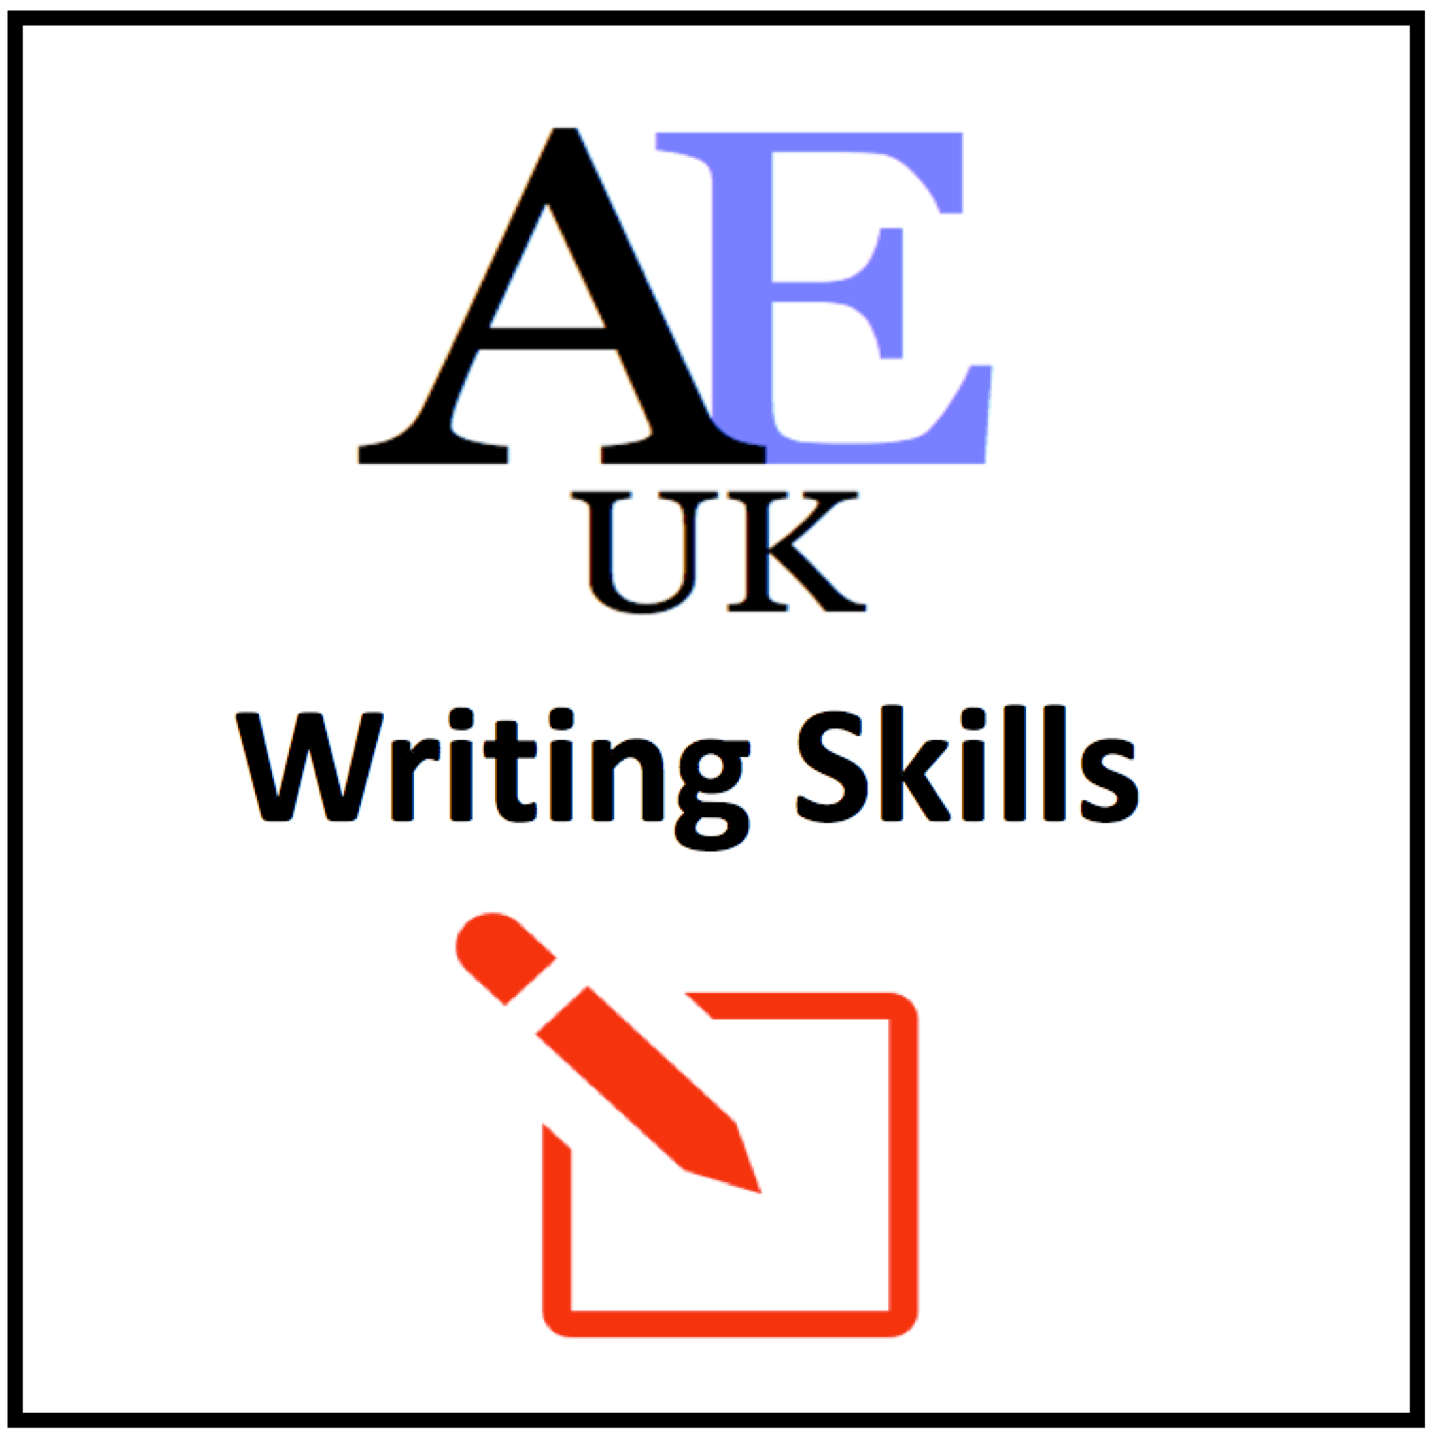 Writing skills AEUK